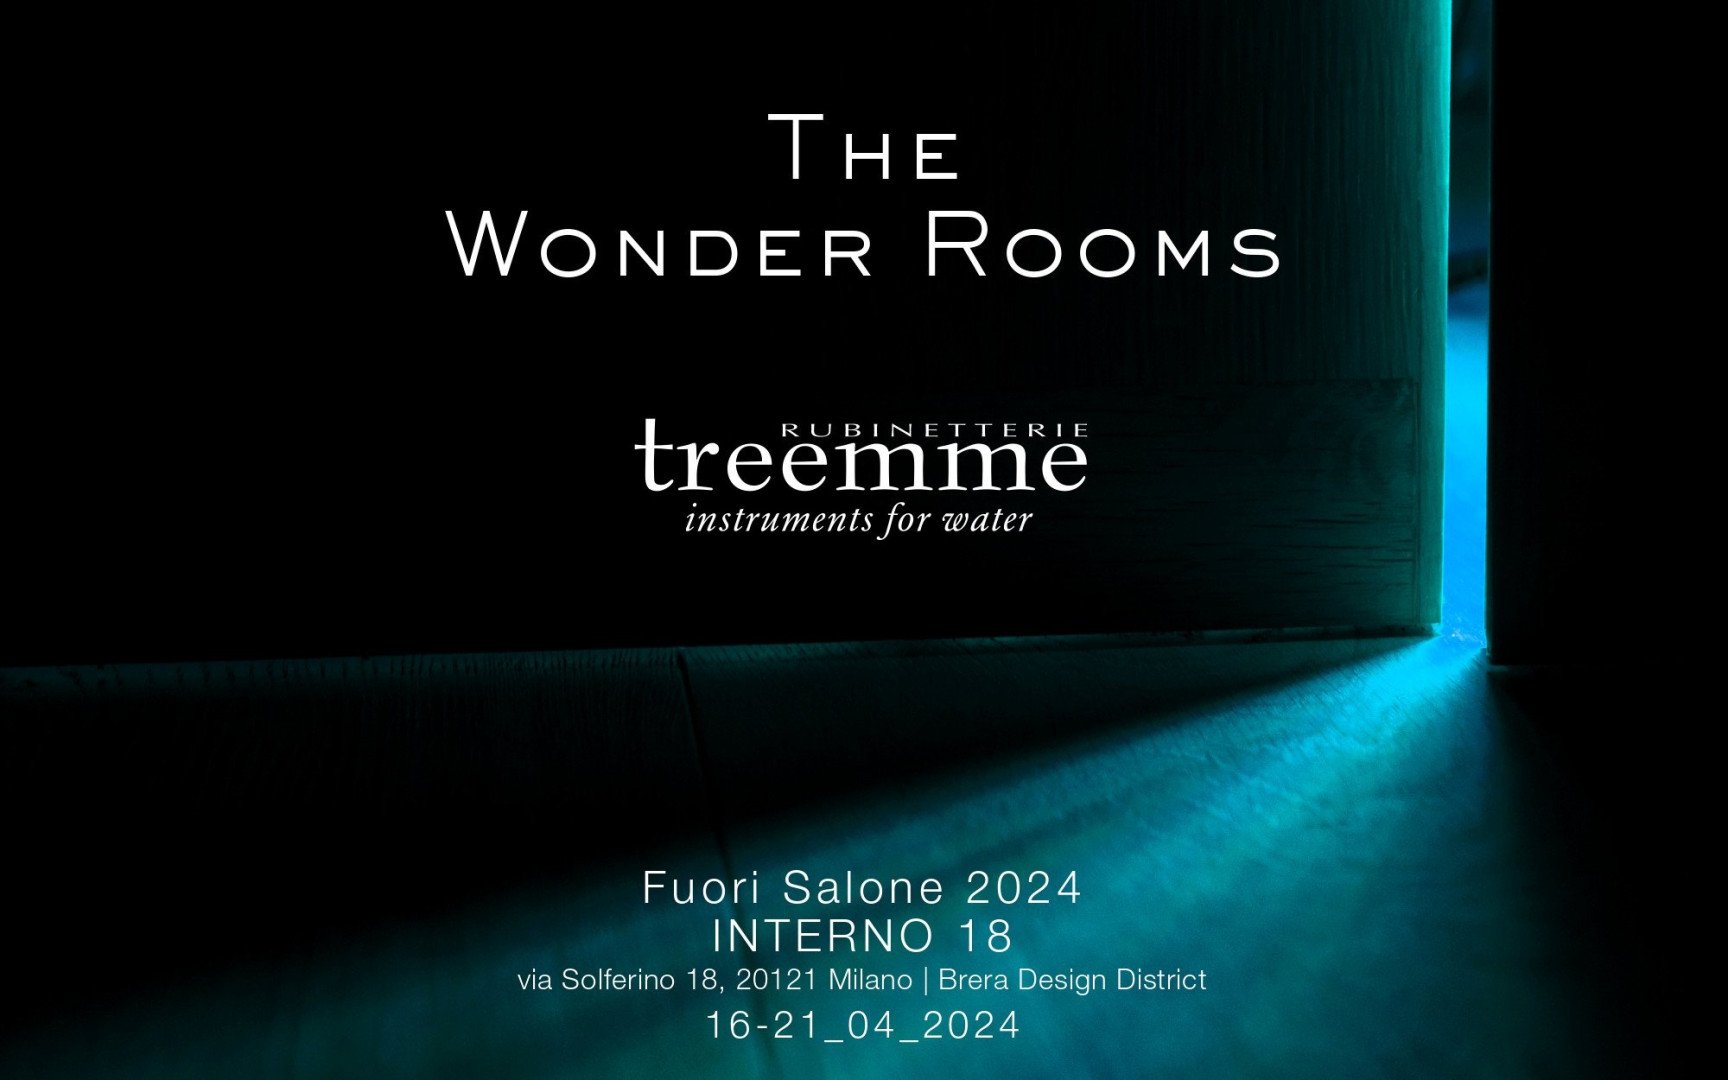 The Wonder Rooms: Mailänder Designwoche 2024 von Rubinetterie Treemme